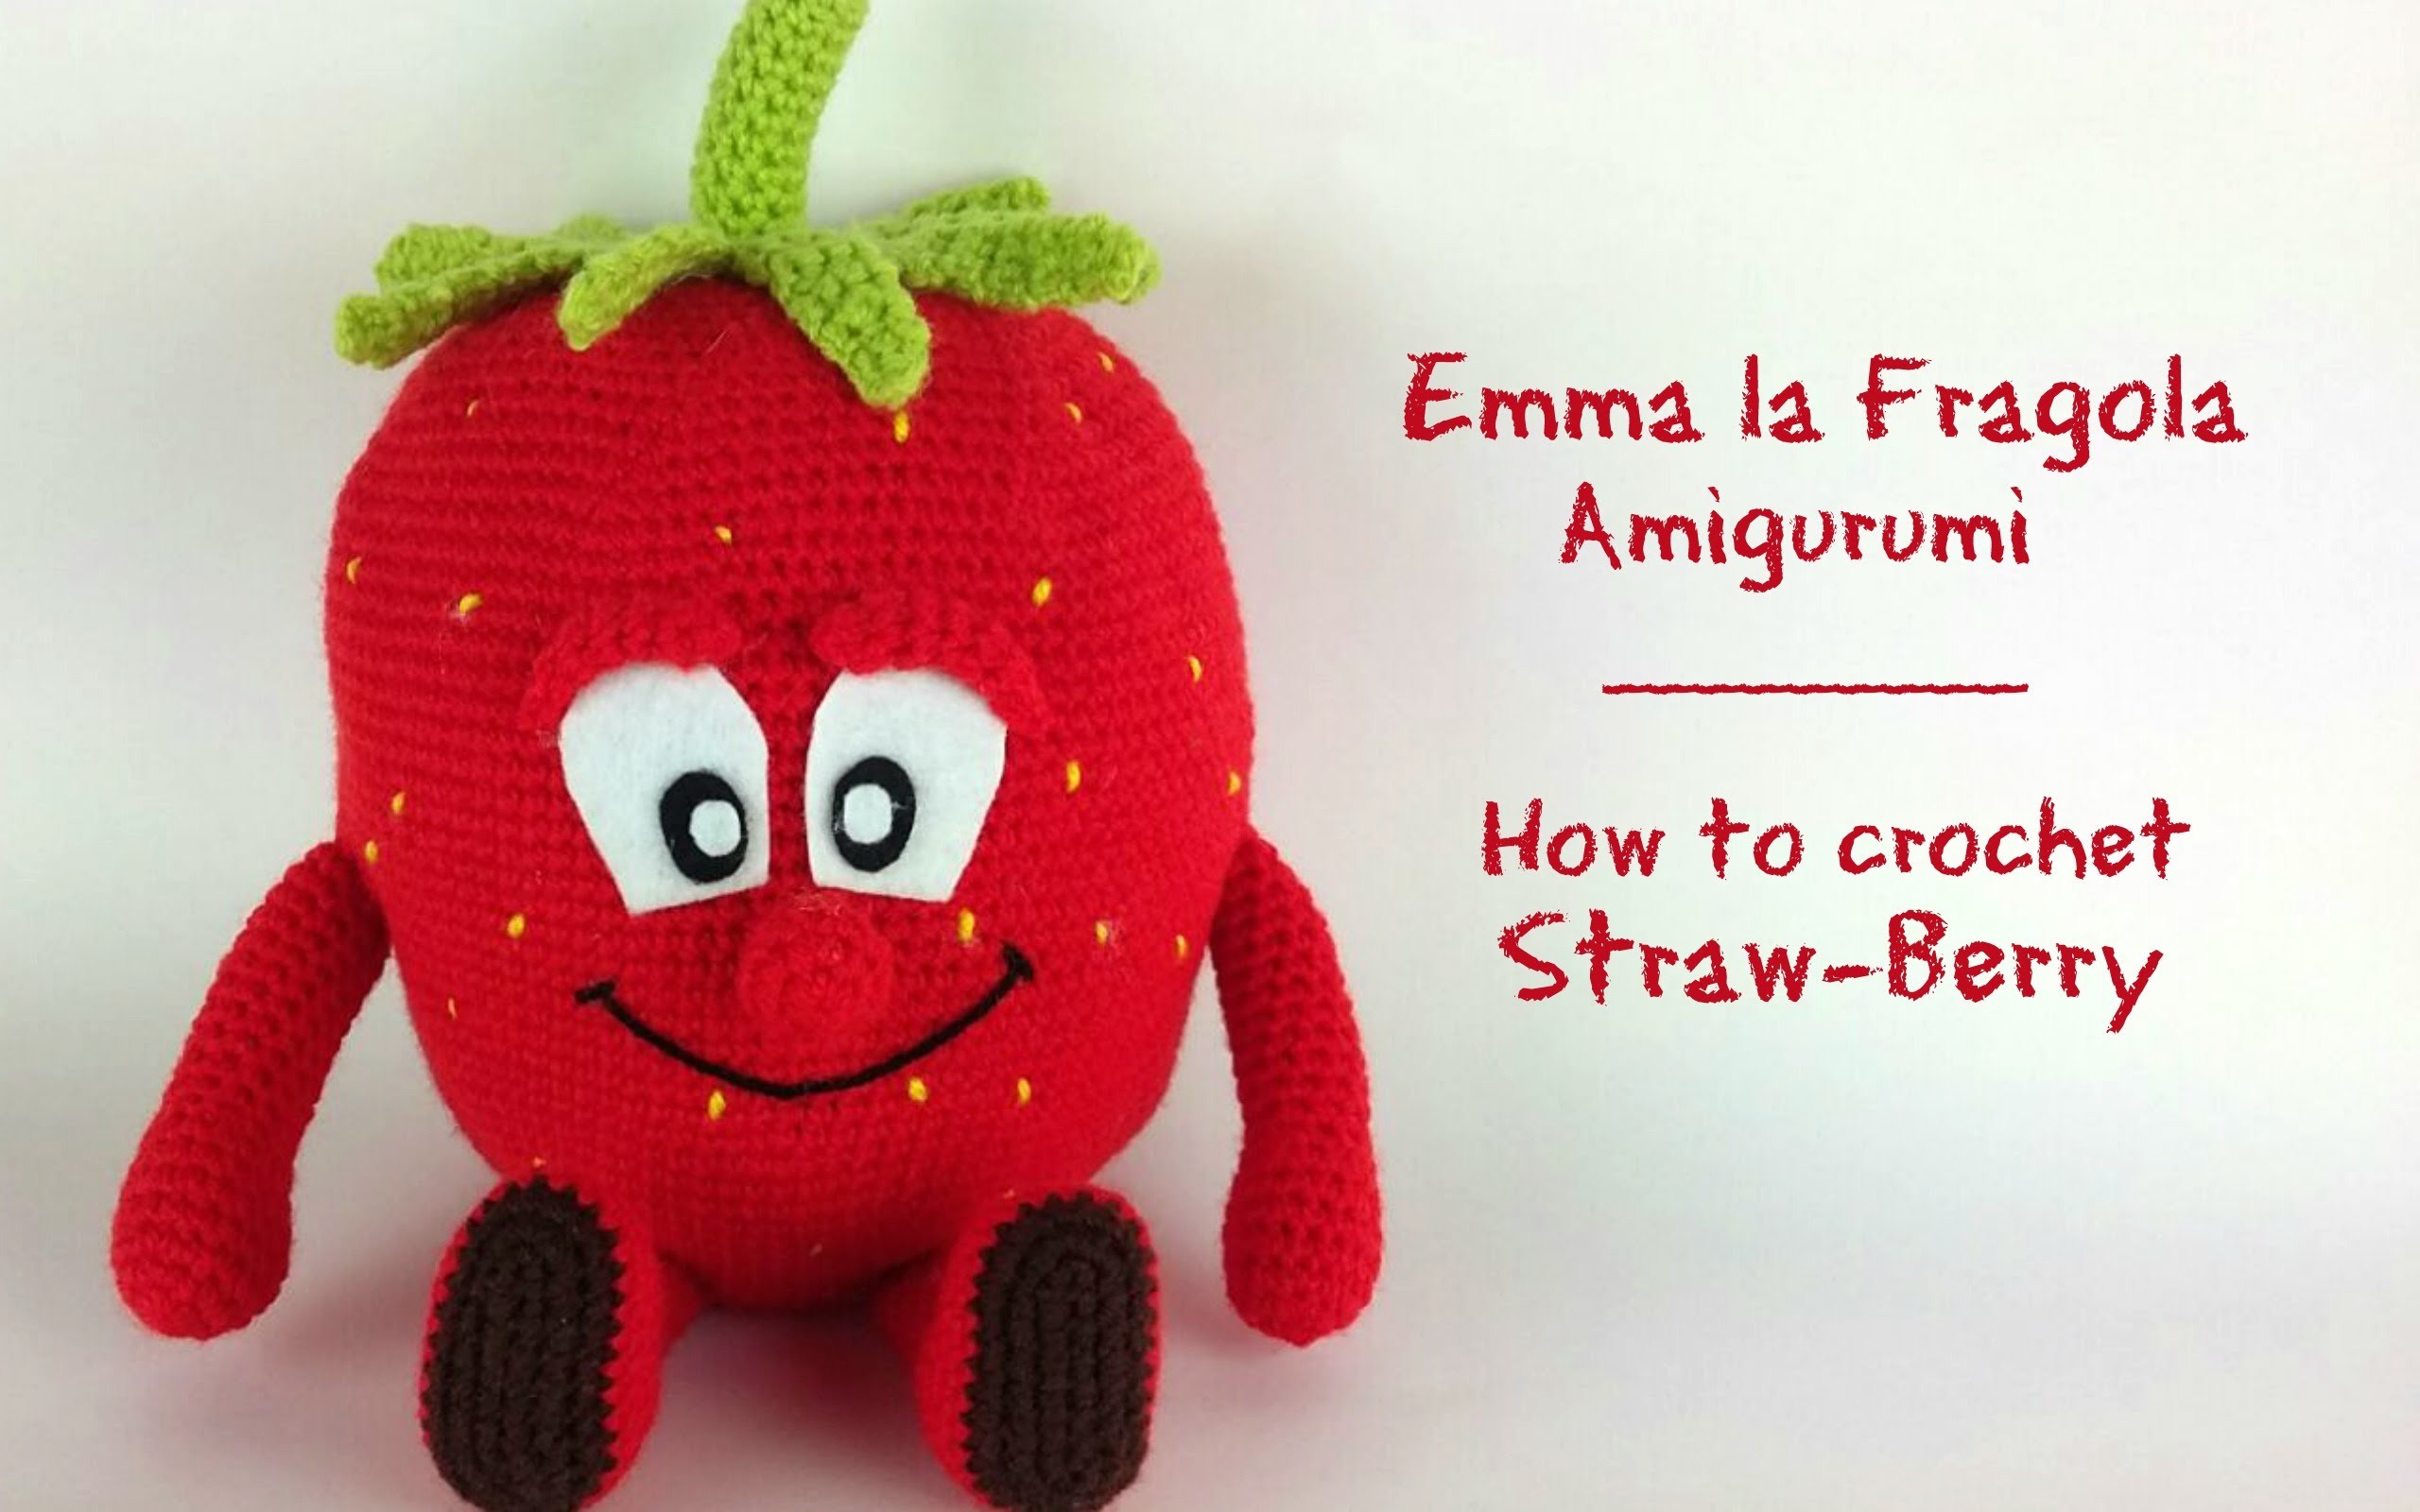 Emma la fragola Amigurumi | How to crochet Straw-Berry Amigurumi